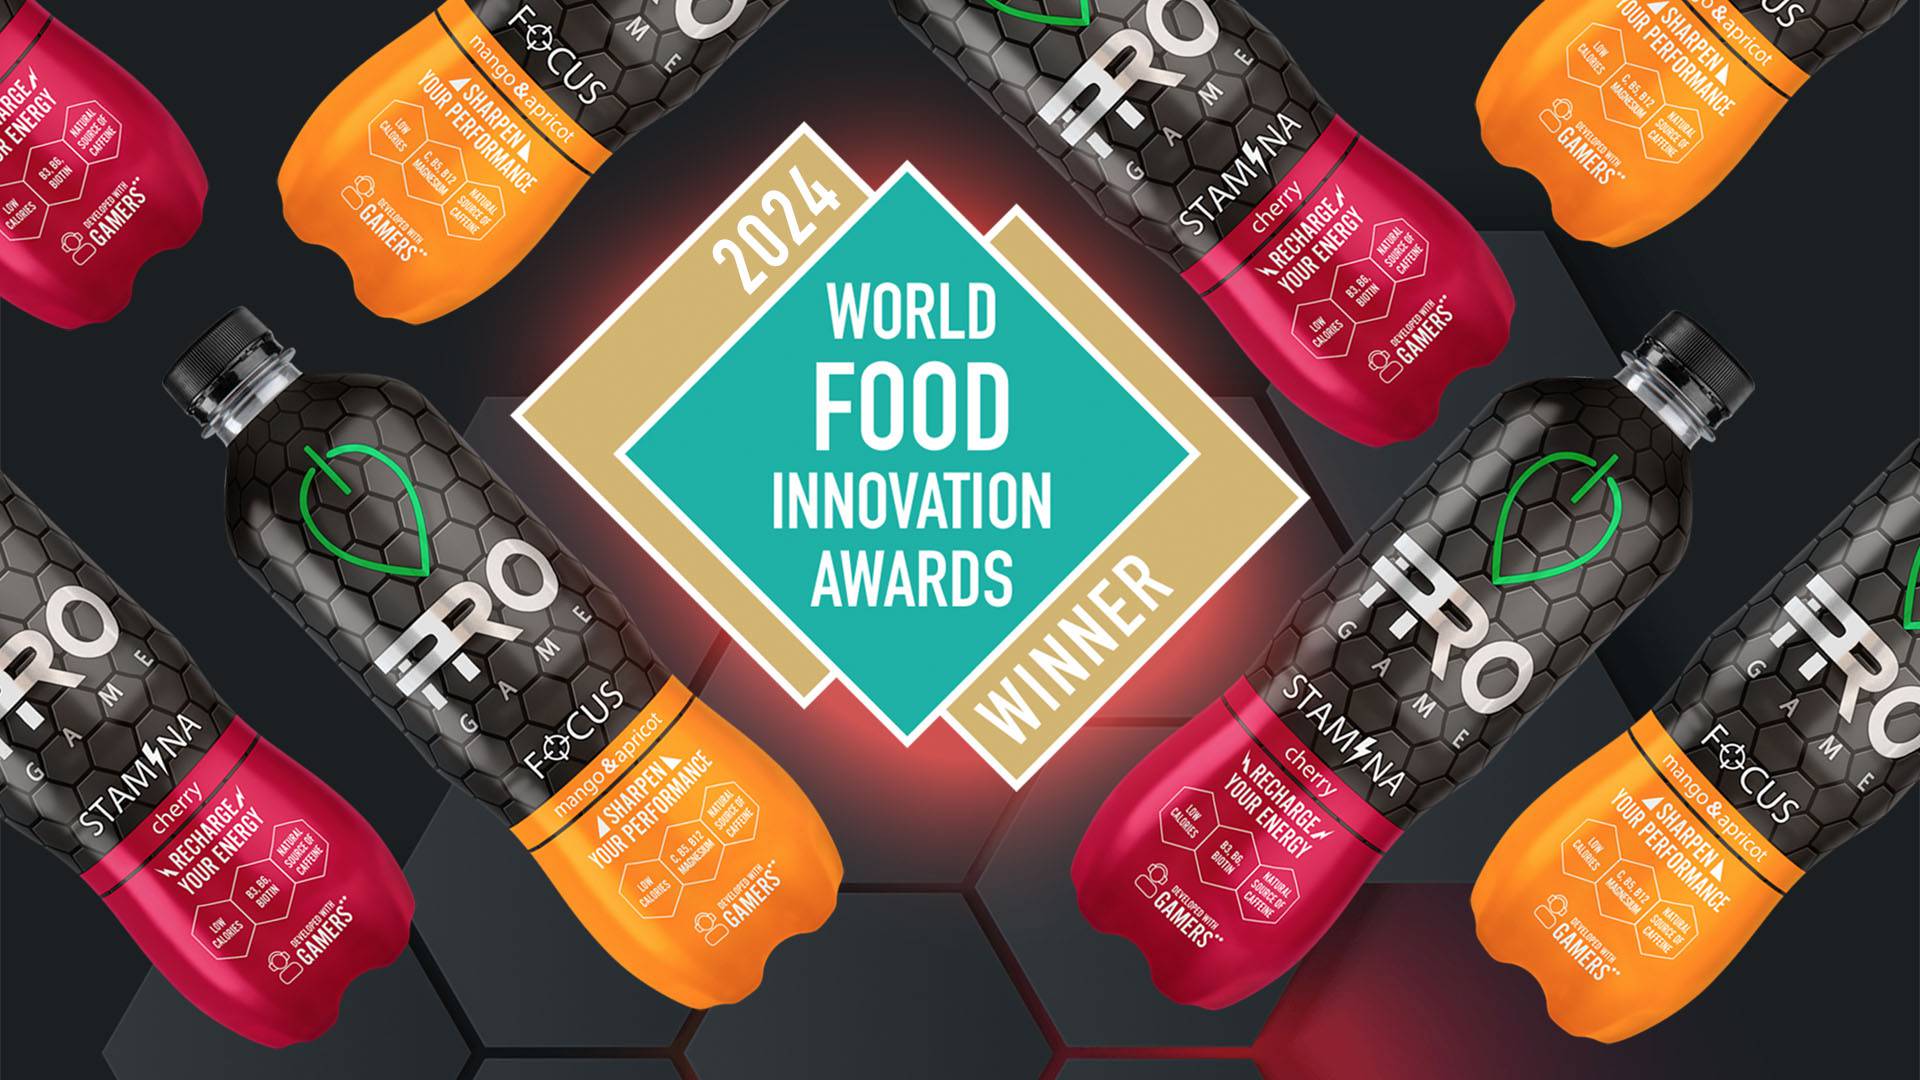 Jamnica ProGame - prvo mjesto u kategoriji inovacija na Foodbev awards u Londonu